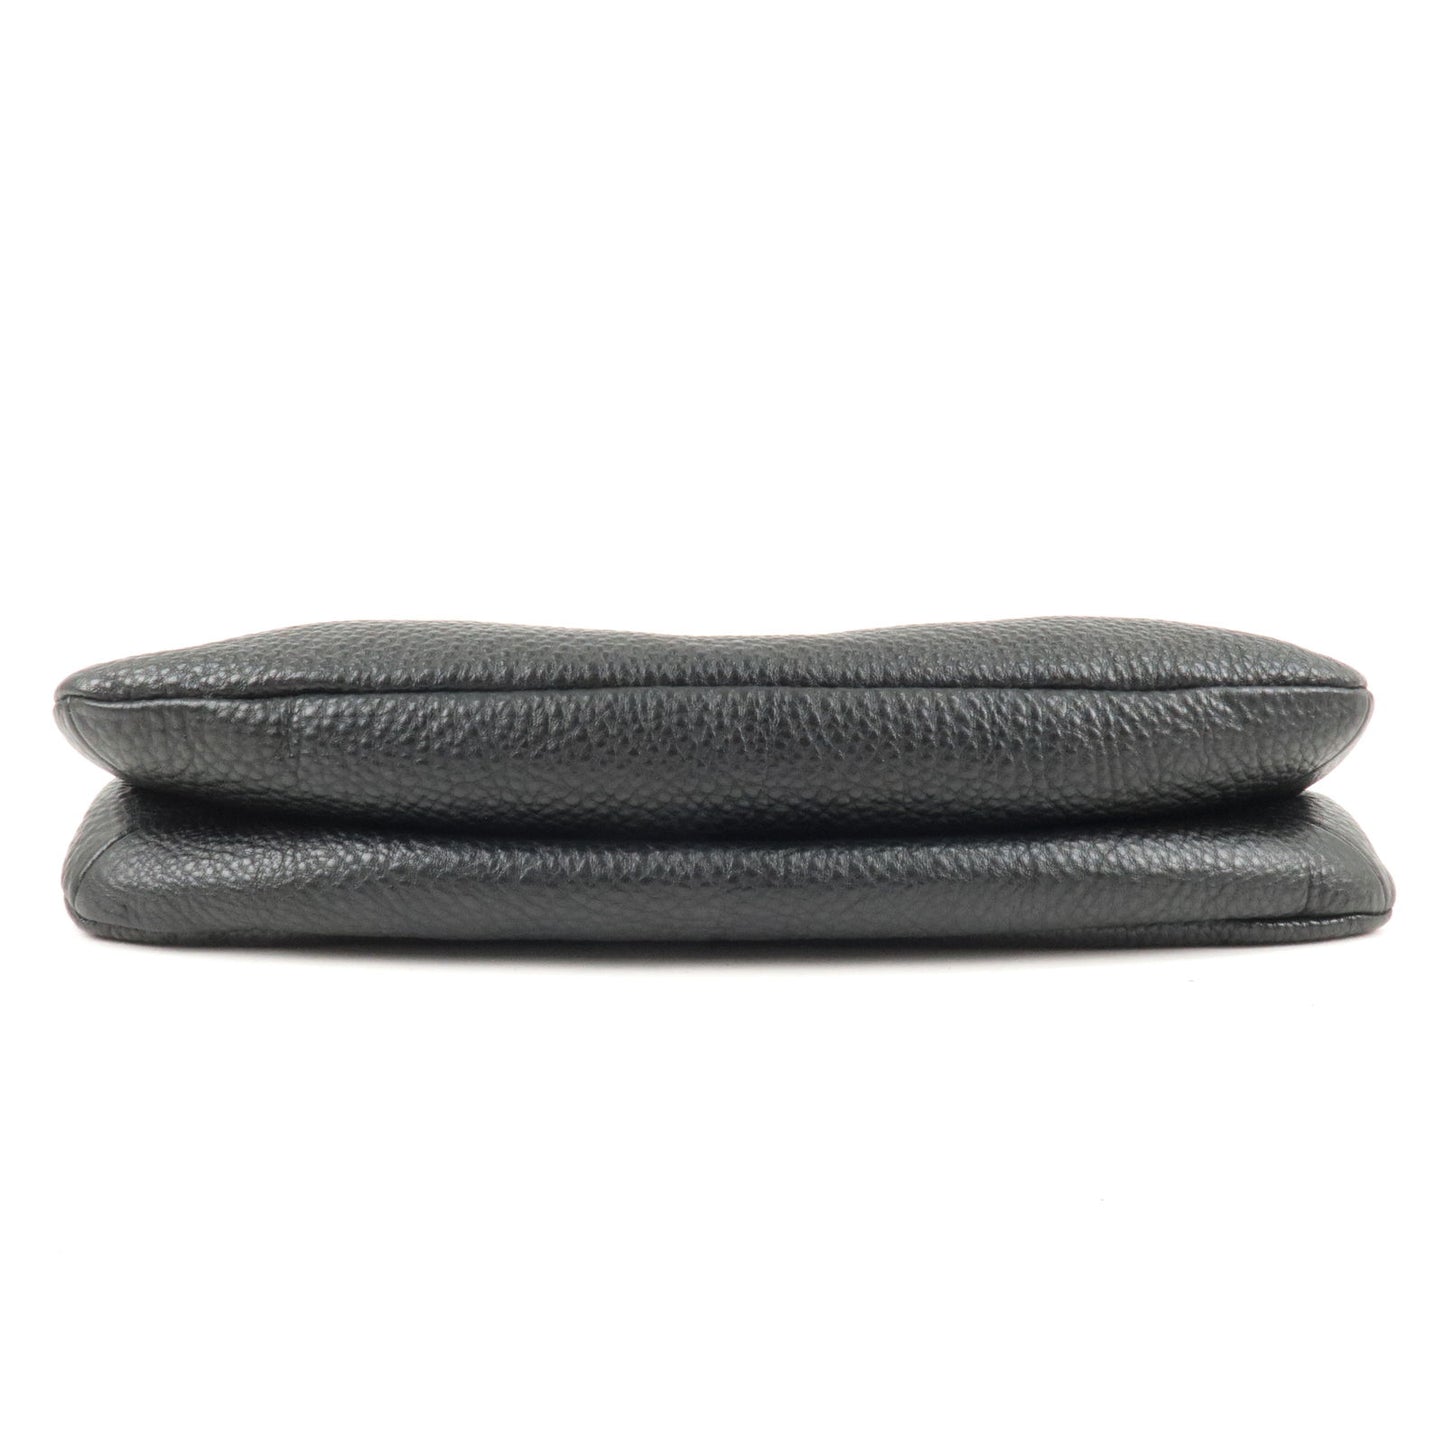 PRADA Leather Shoulder Bag Hand Bag NERO Black BR4894